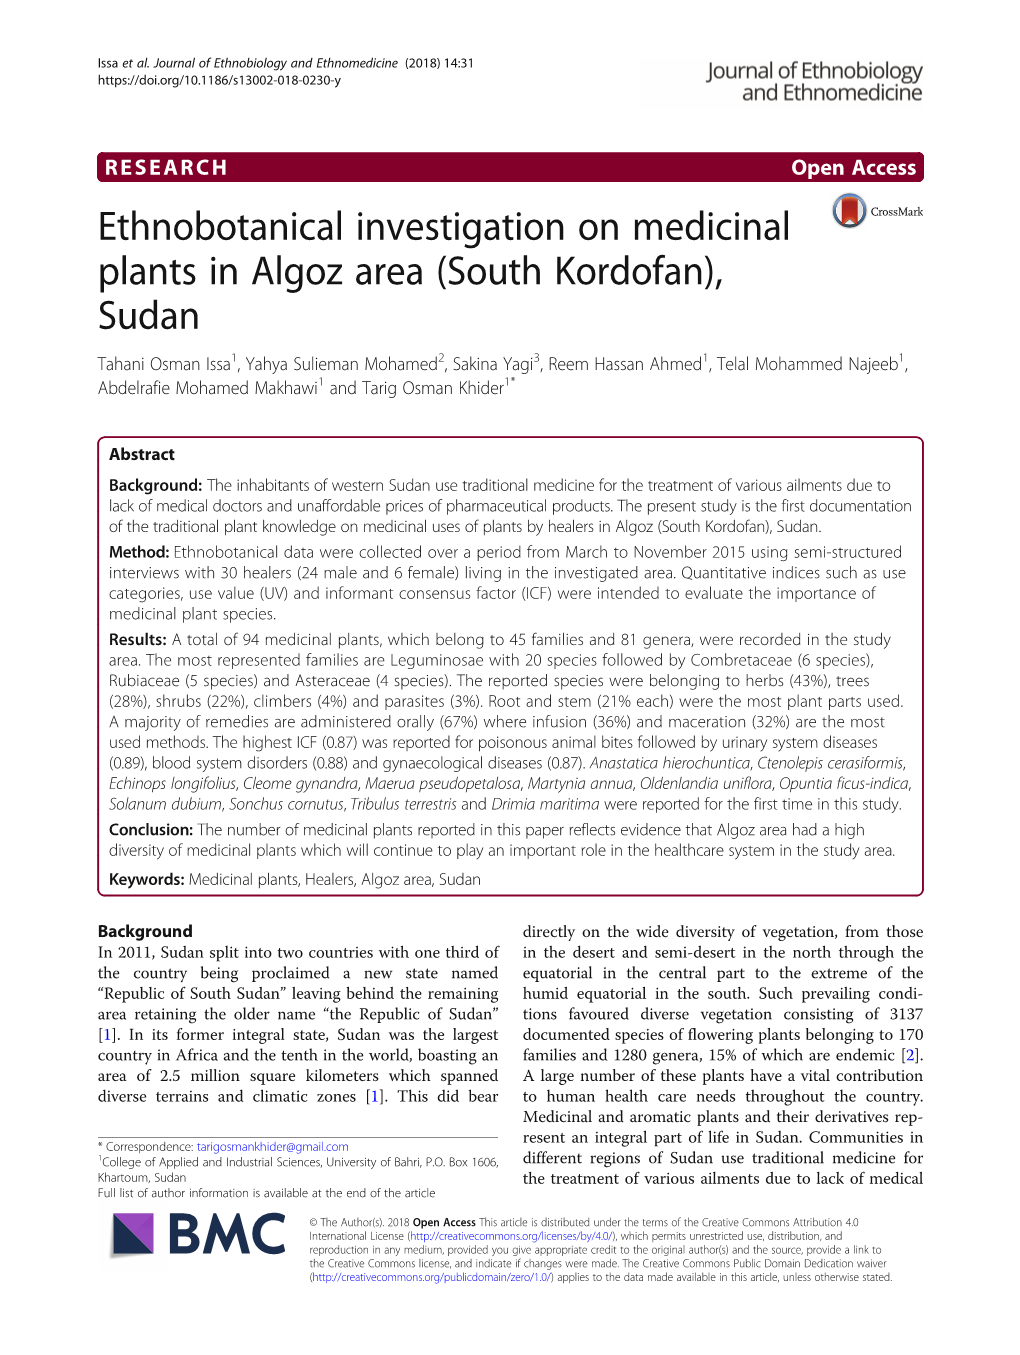 Ethnobotanical Investigation on Medicinal Plants in Algoz Area